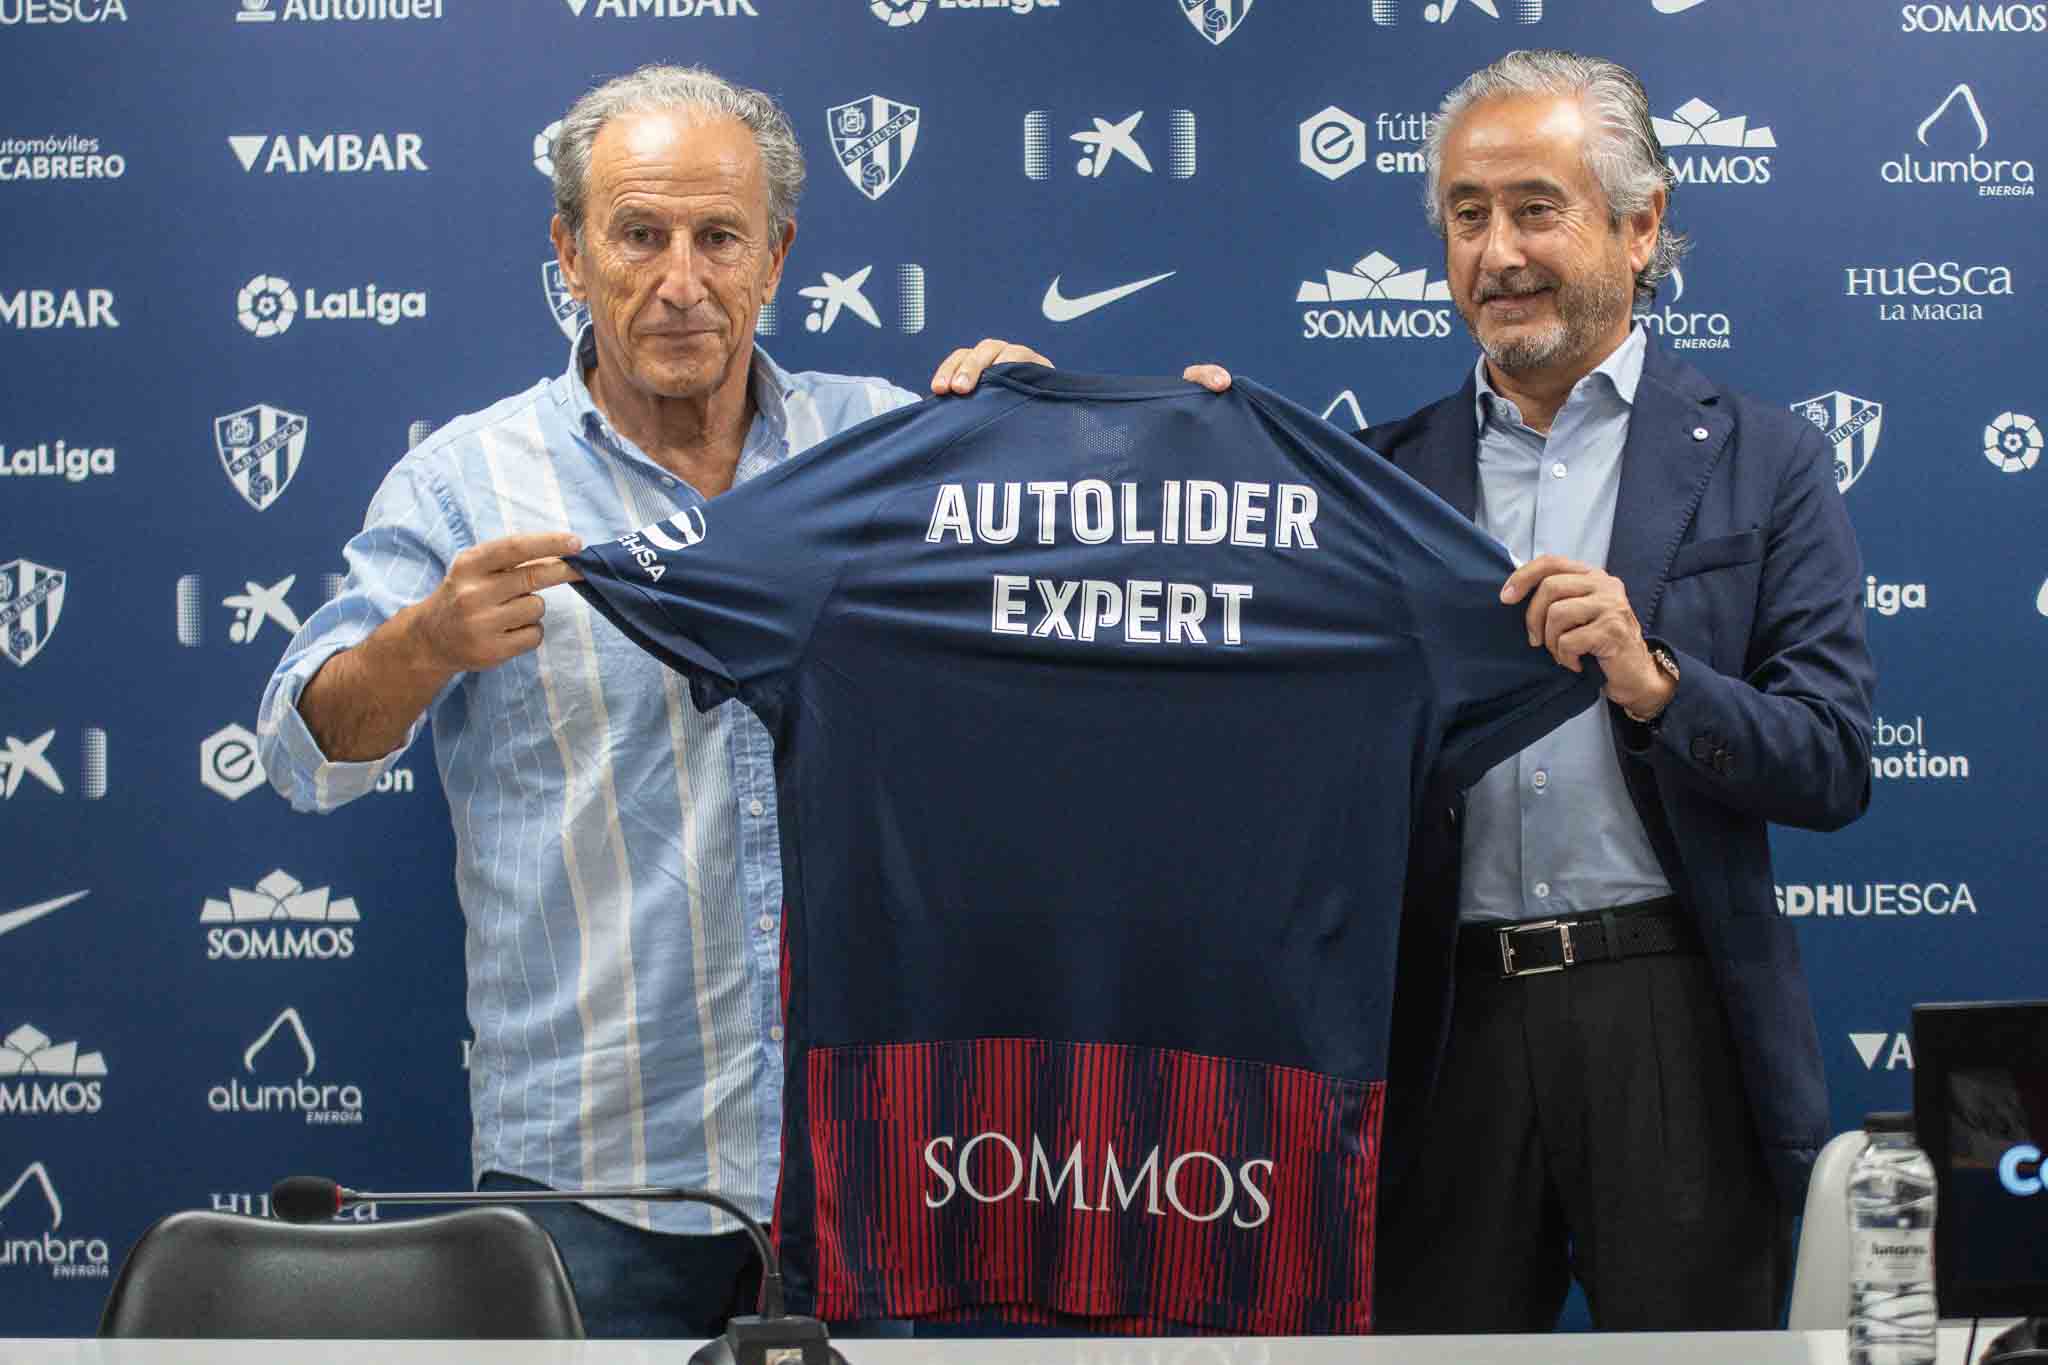 Autolíder refuerza su compromiso con la SD Huesca